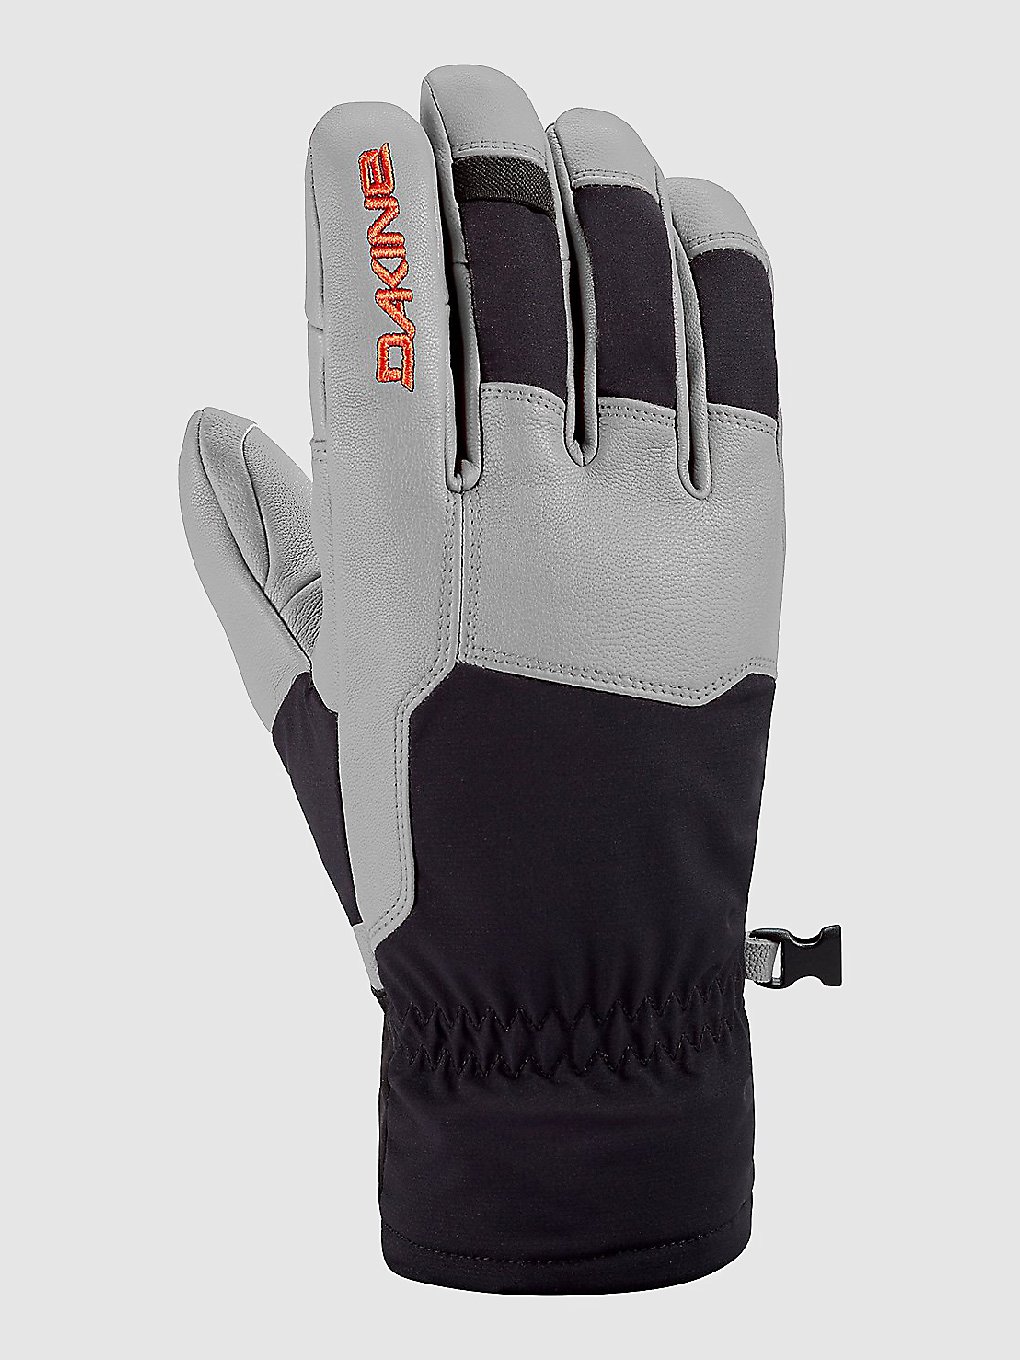 Dakine Pathfinder Handschuhe steel grey kaufen